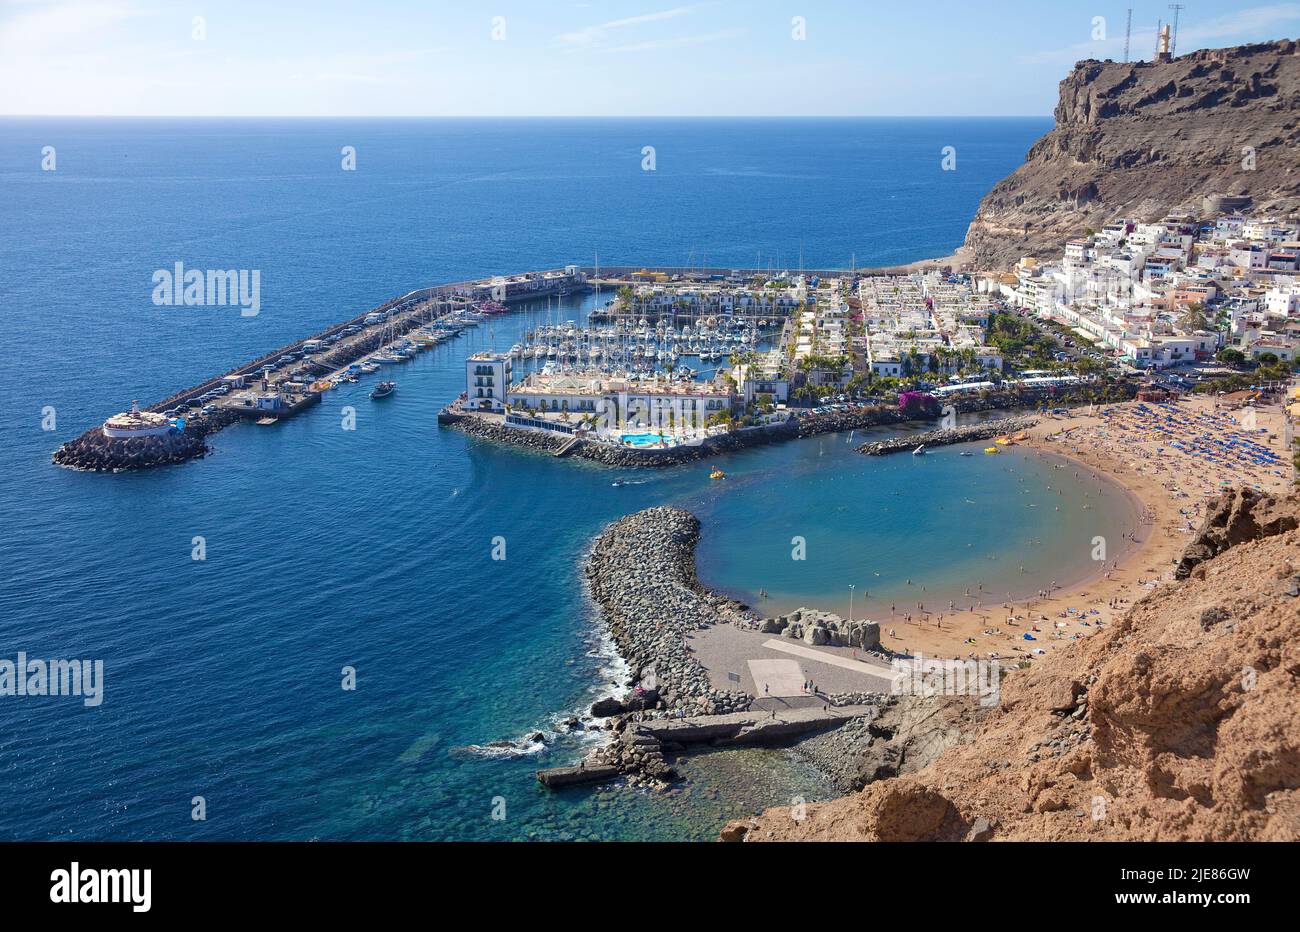 Vue d'ensemble de Puerto de Mogan, Gran Canaria, îles Canaries, Espagne, Europe Banque D'Images